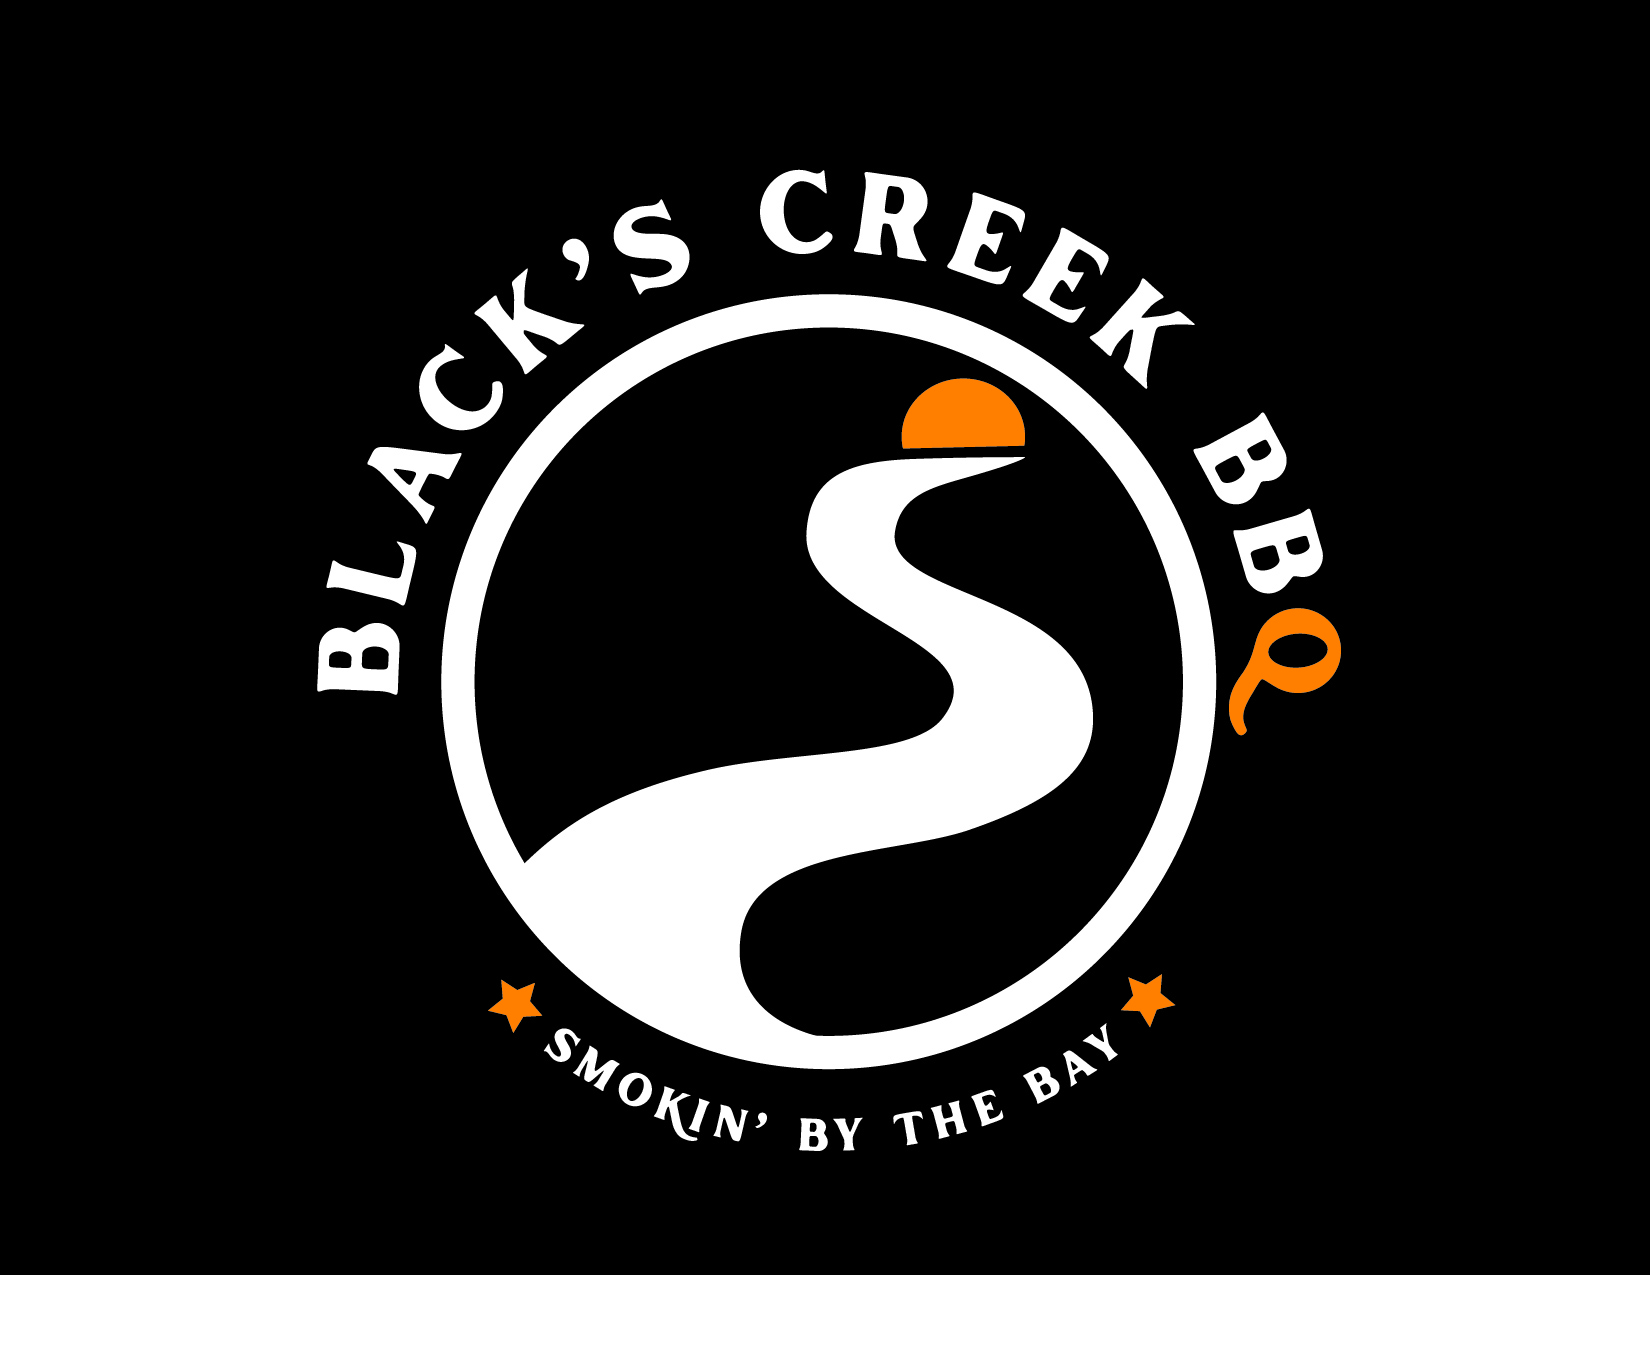 Blacks Creek BBQ Home